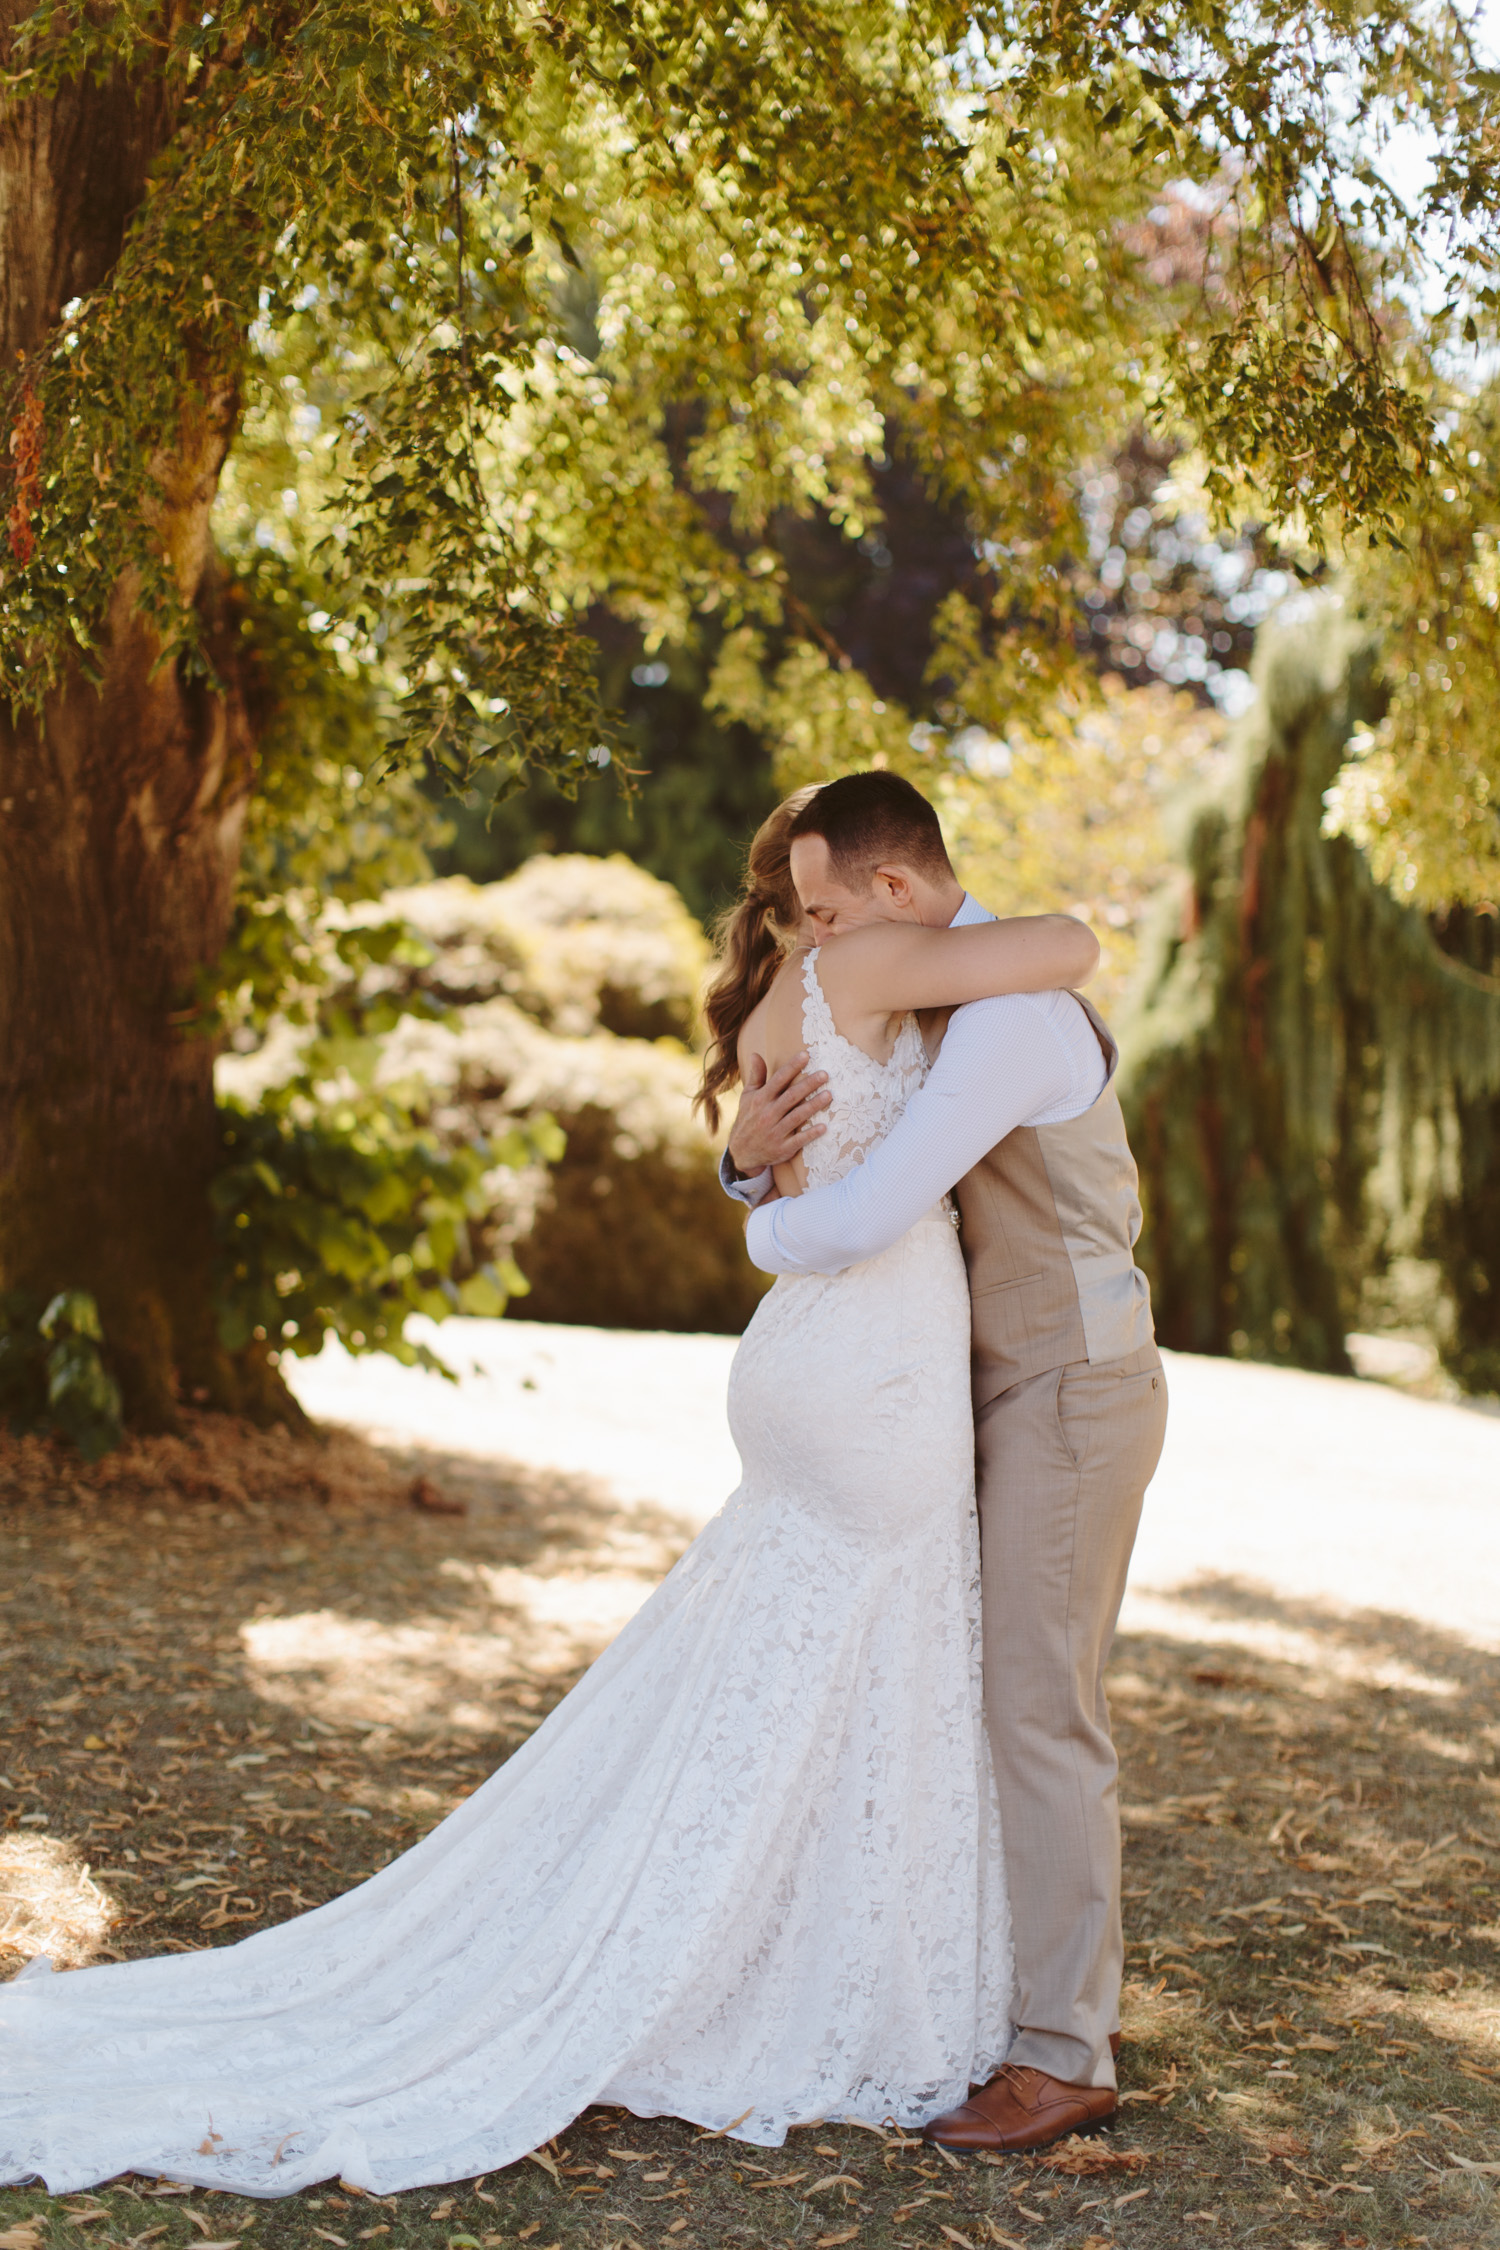 Steph & Jacob | Wedding Photos - The Hug | Wedding & Event Planners | Dreamgroup